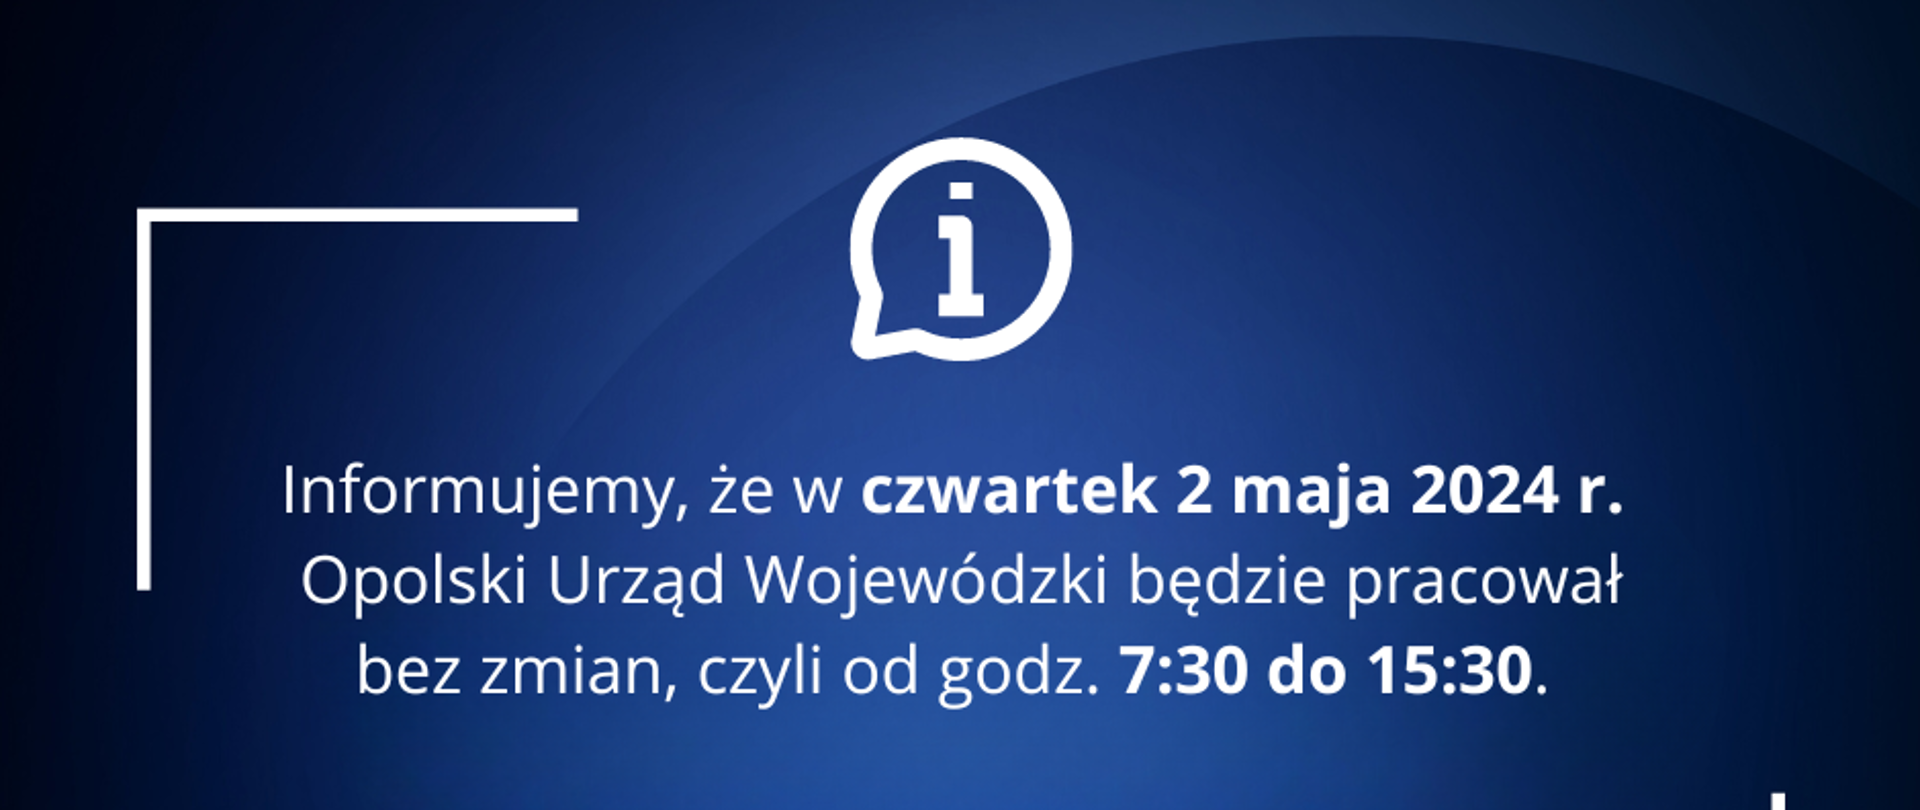 Grafika informująca, że w czwartek 2 maja 2024 roku Opolski Urząd Wojewódzki będzie pracował bez zmian, czyli od godziny 7:30 do 15:30. 